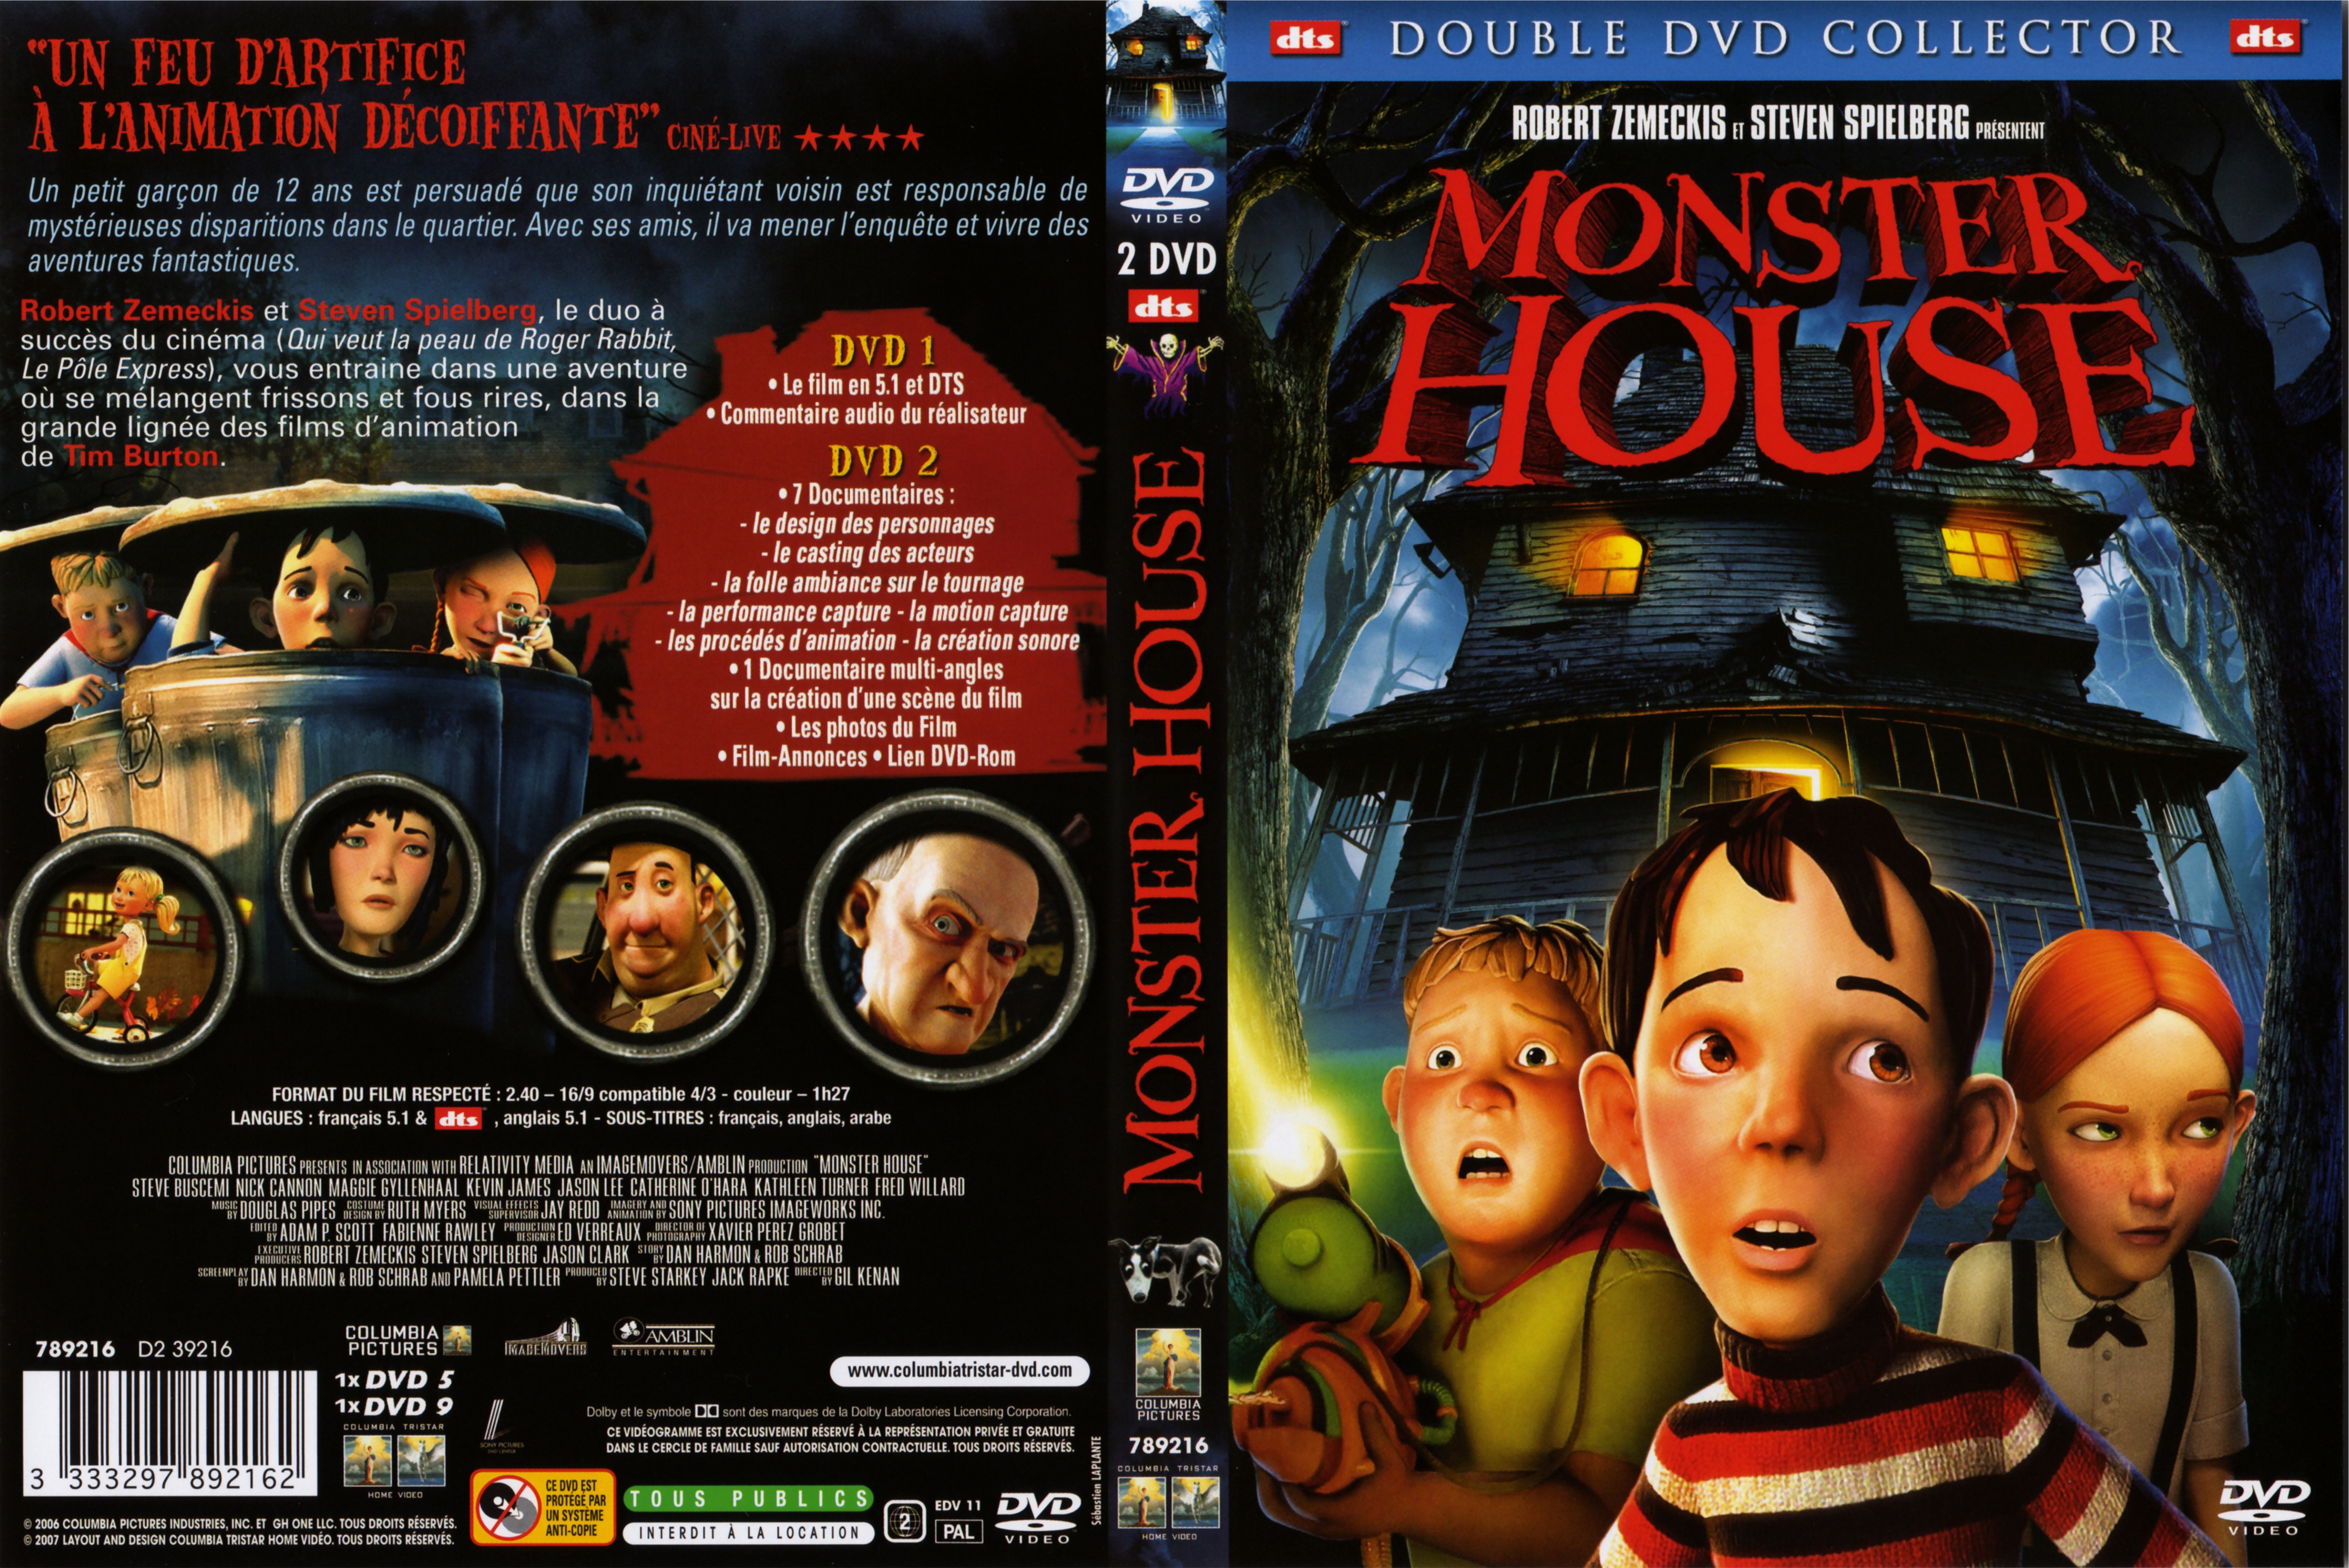 Jaquette DVD Monster house v2